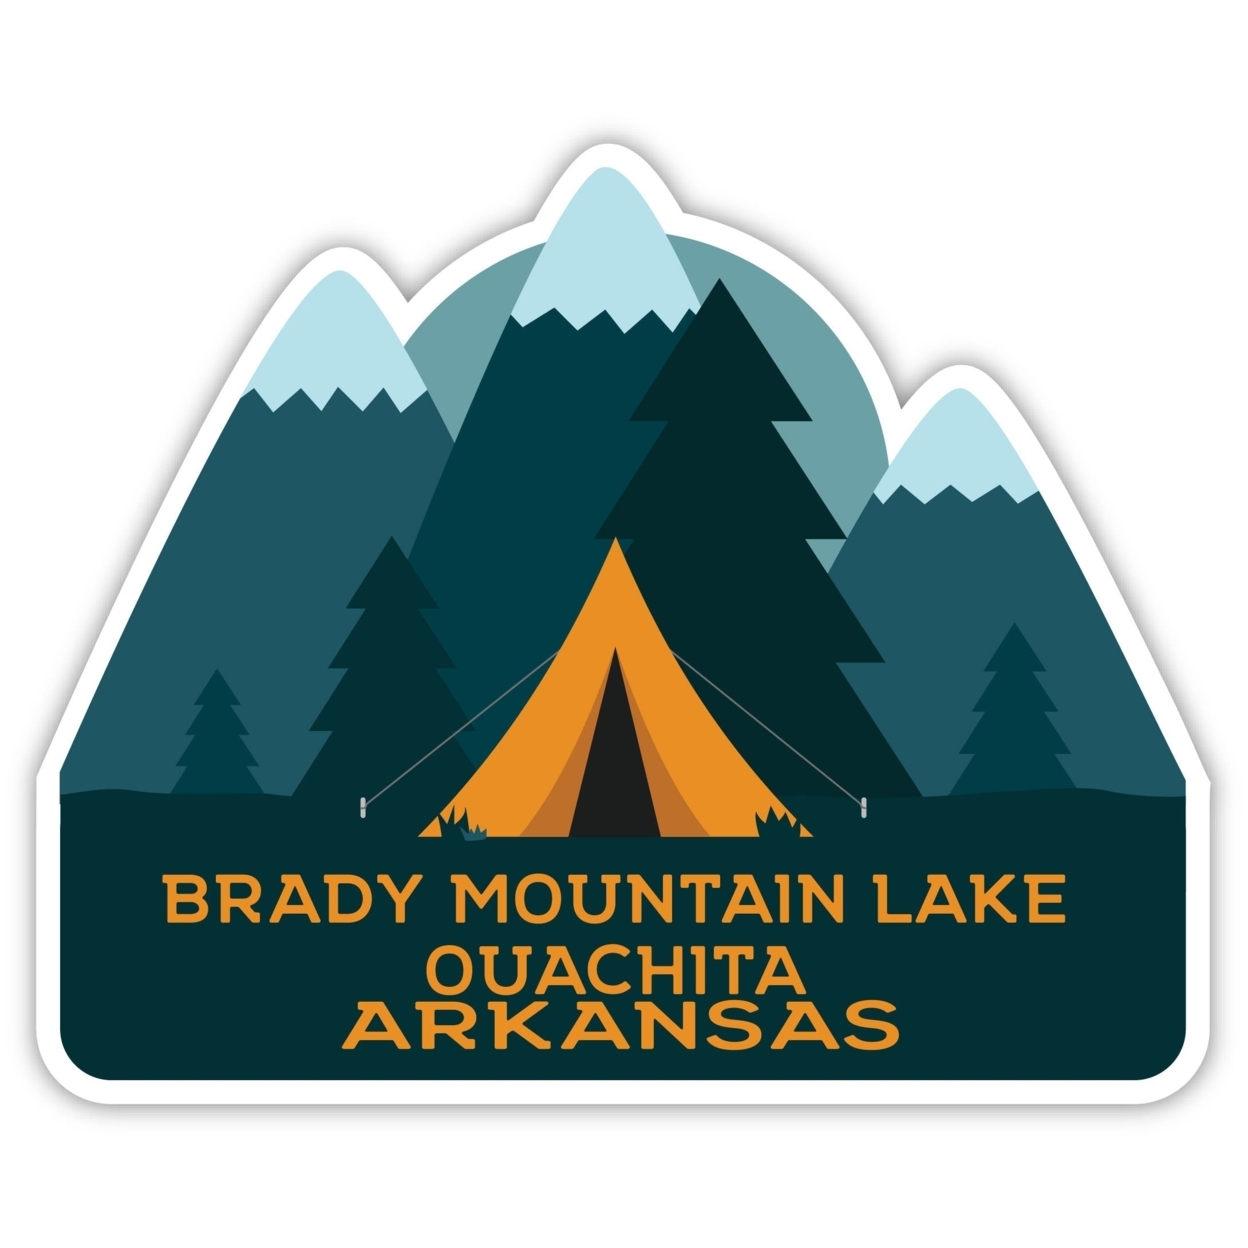 Brady Mountain Lake Ouachita Arkansas Souvenir Decorative Stickers (Choose Theme And Size) - 4-Pack, 10-Inch, Bear